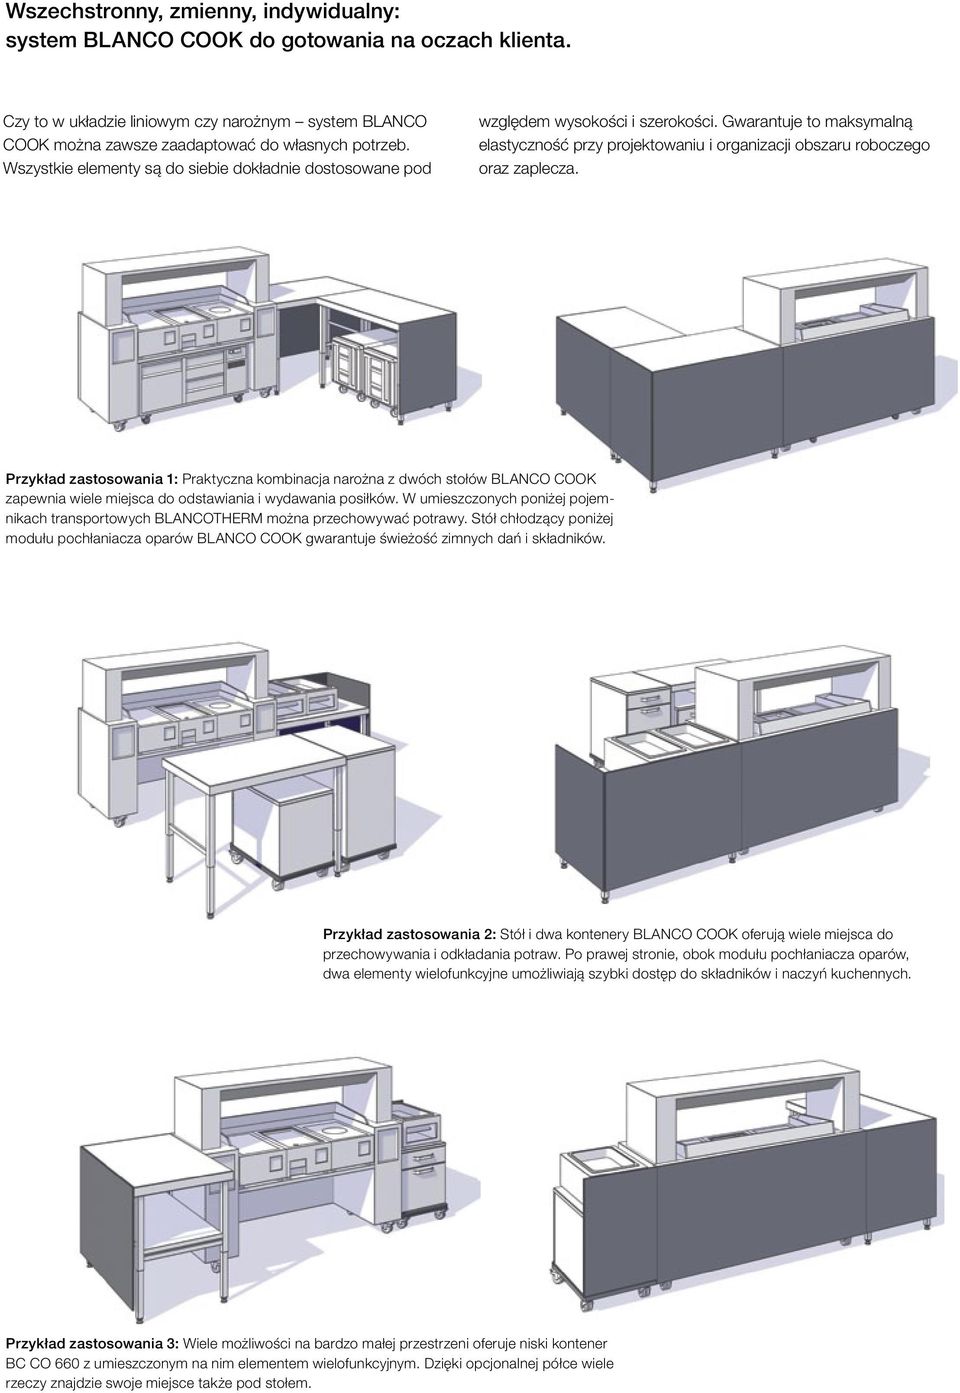 Przykład zastosowania 1: Praktyczna kombinacja narożna z dwóch stołów BLANCO COOK zapewnia wiele miejsca do odstawiania i wydawania posiłków.